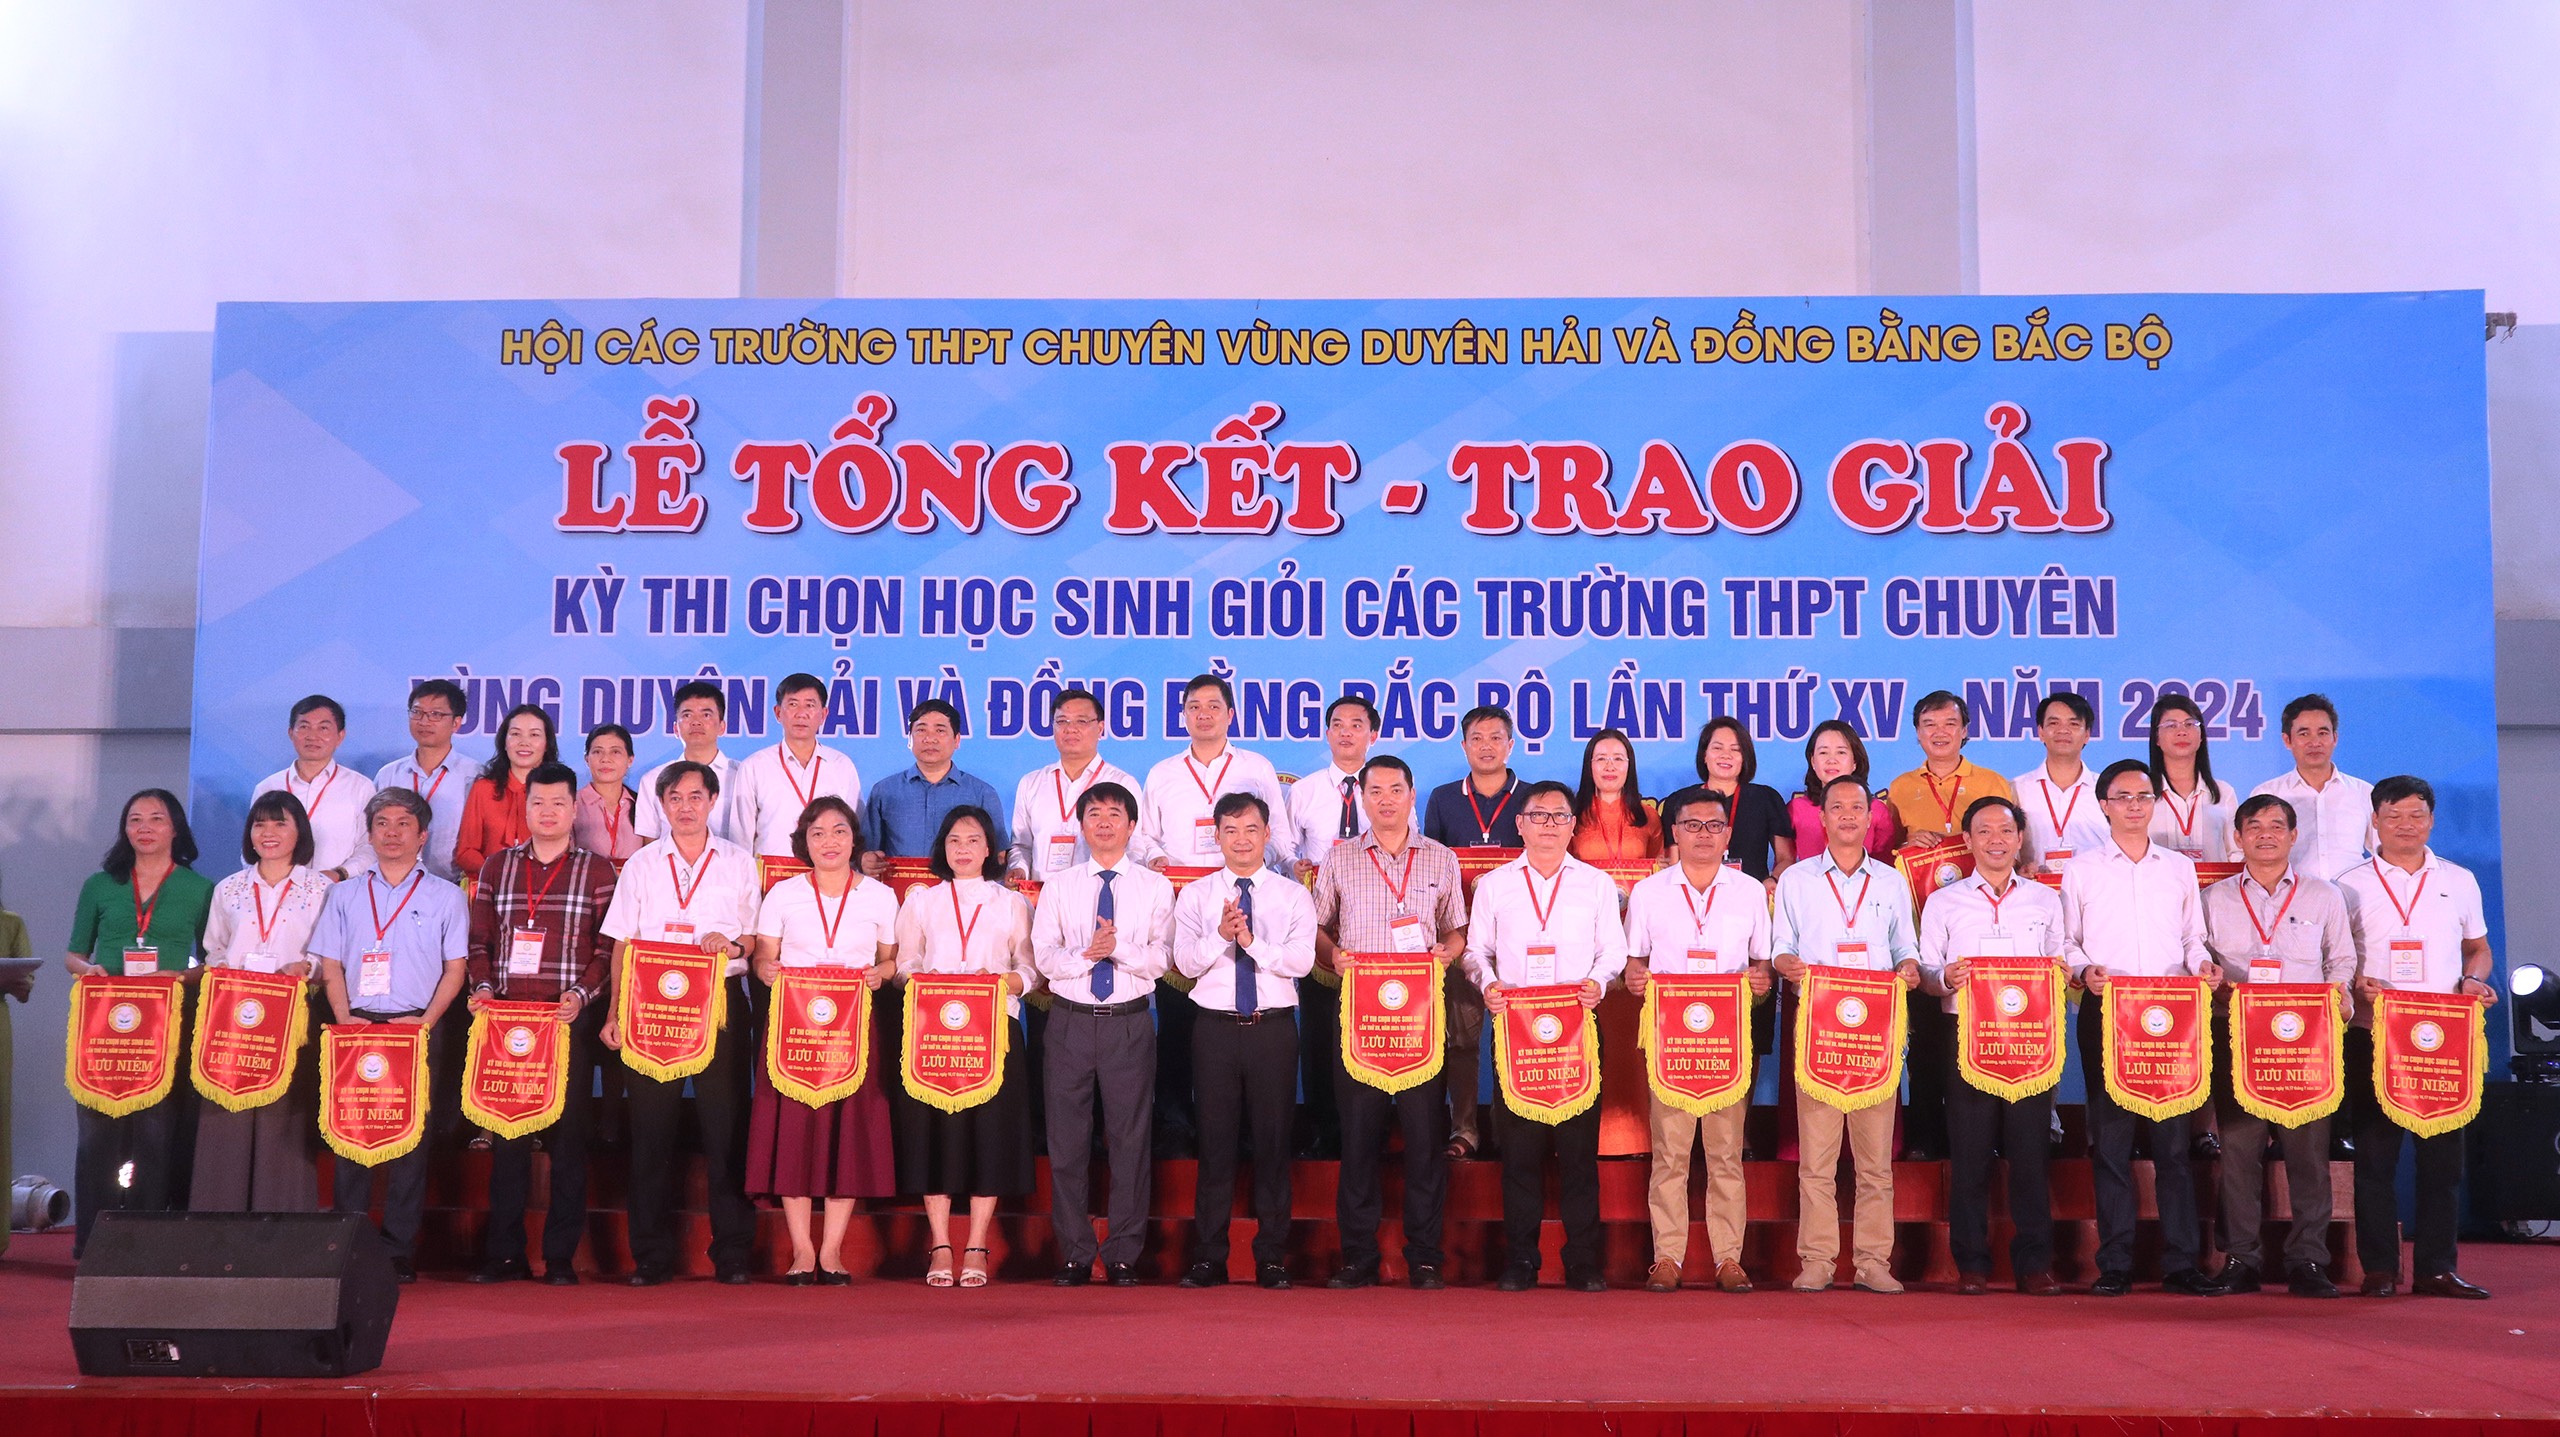 Tổng kết và trao giải cuộc thi học sinh giỏi khu vực duyên hải và đồng bằng Bắc Bộ tại trường THPT Chuyên Nguyễn Trãi, tỉnh Hải Dương, lần thứ XV năm 2024